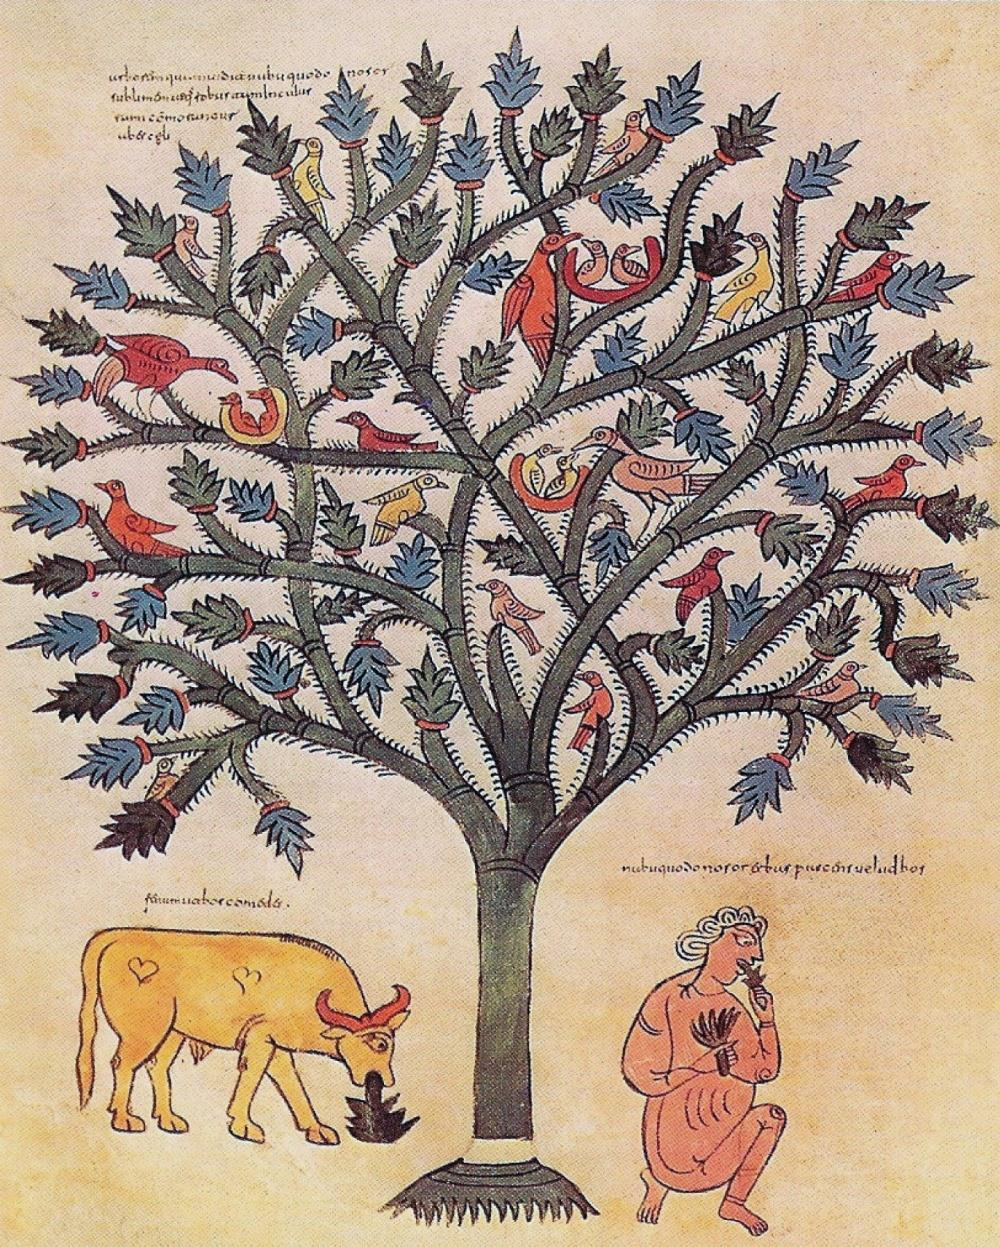 3. De droomboom van Nebukadnezar een boom die reikte tot aan de hemel de boom die voedsel bood aan allen in wiens takken de vogels nestelden op bevel van een wachter wordt de.